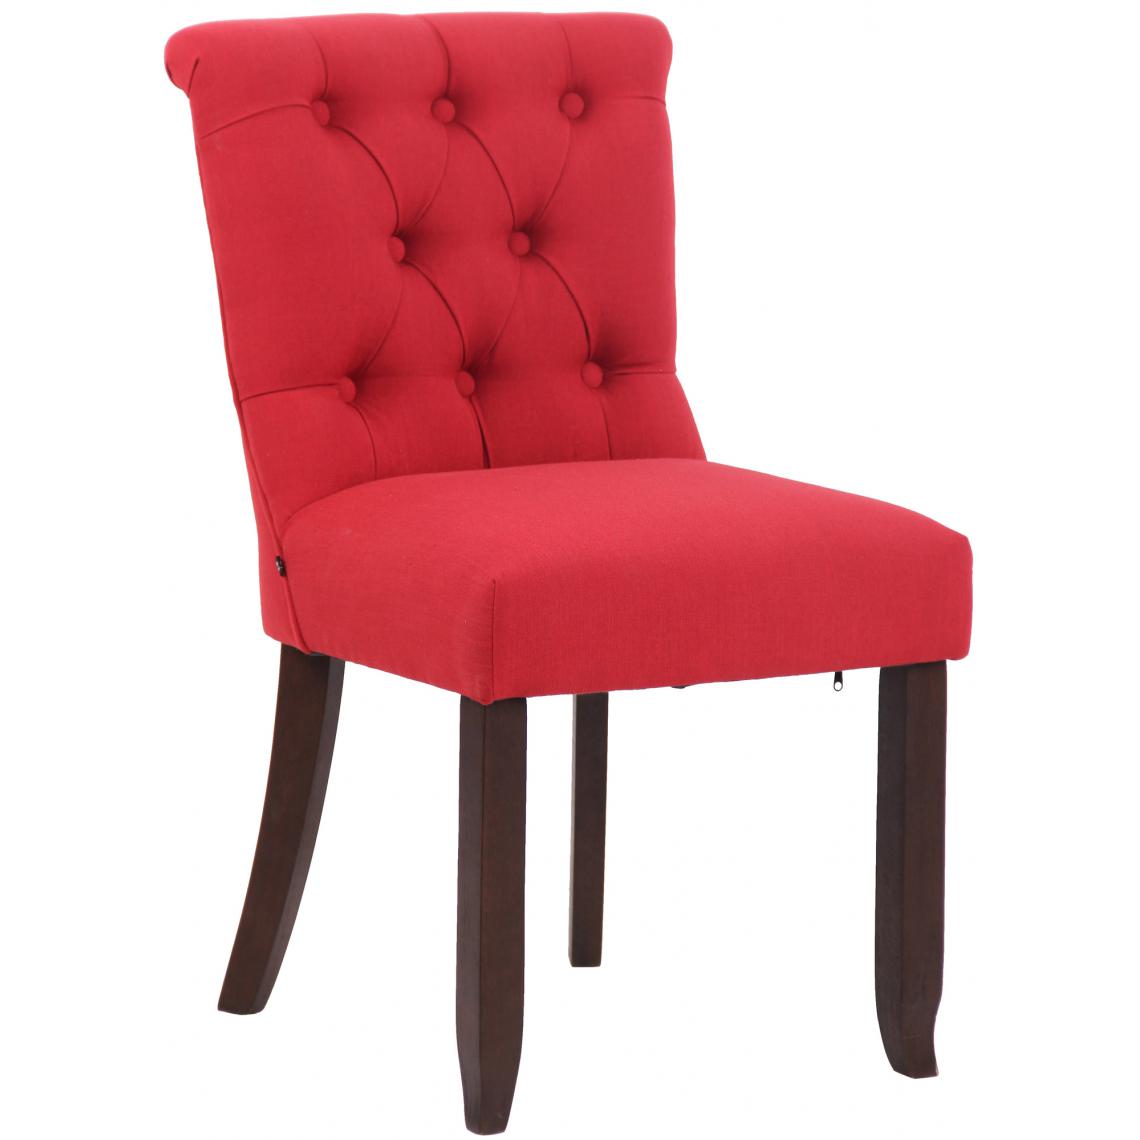 Icaverne - Stylé Chaise en tissu gamme Nouakchott antique couleur rouge - Chaises